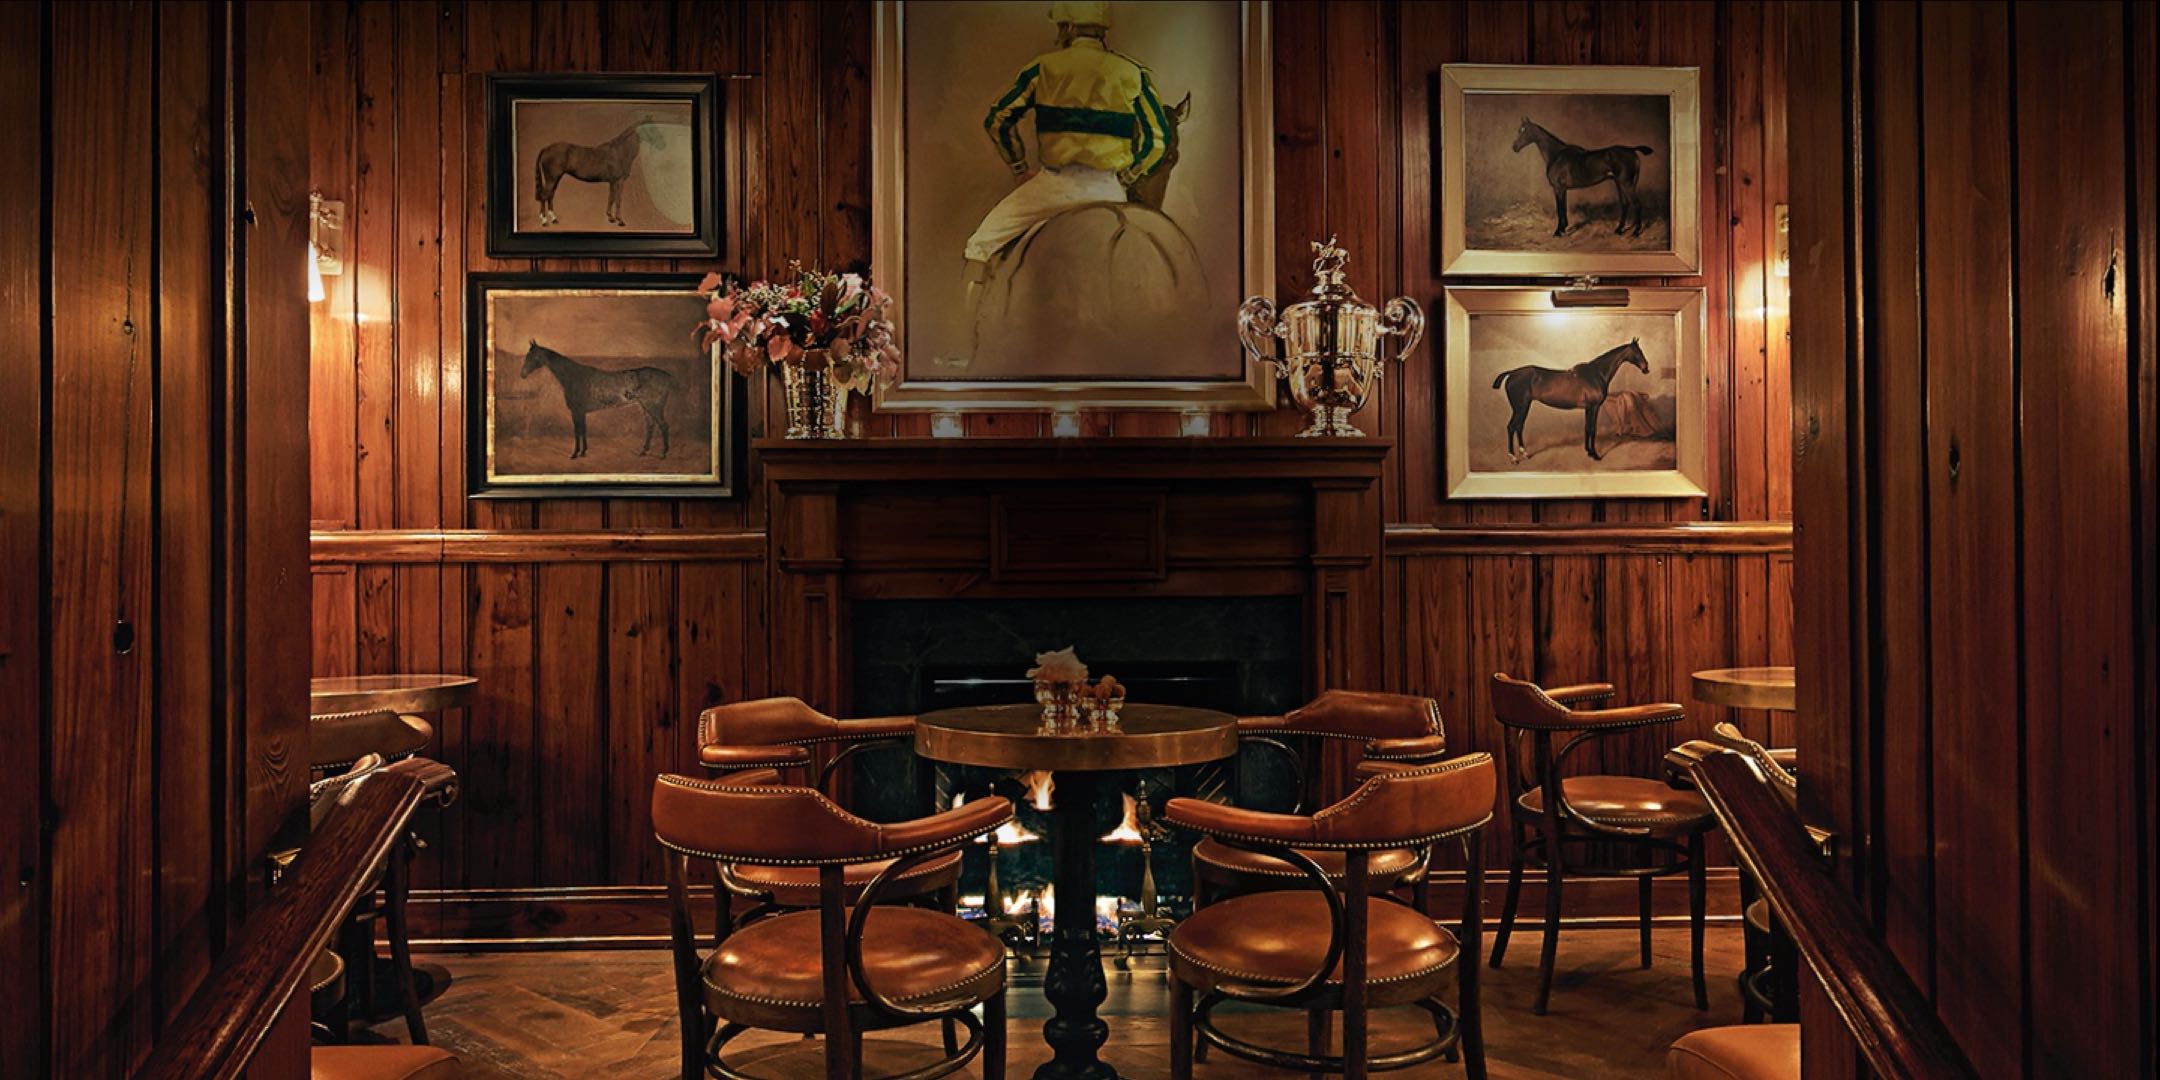 The Polo Bar: Ralph Lauren Restaurant